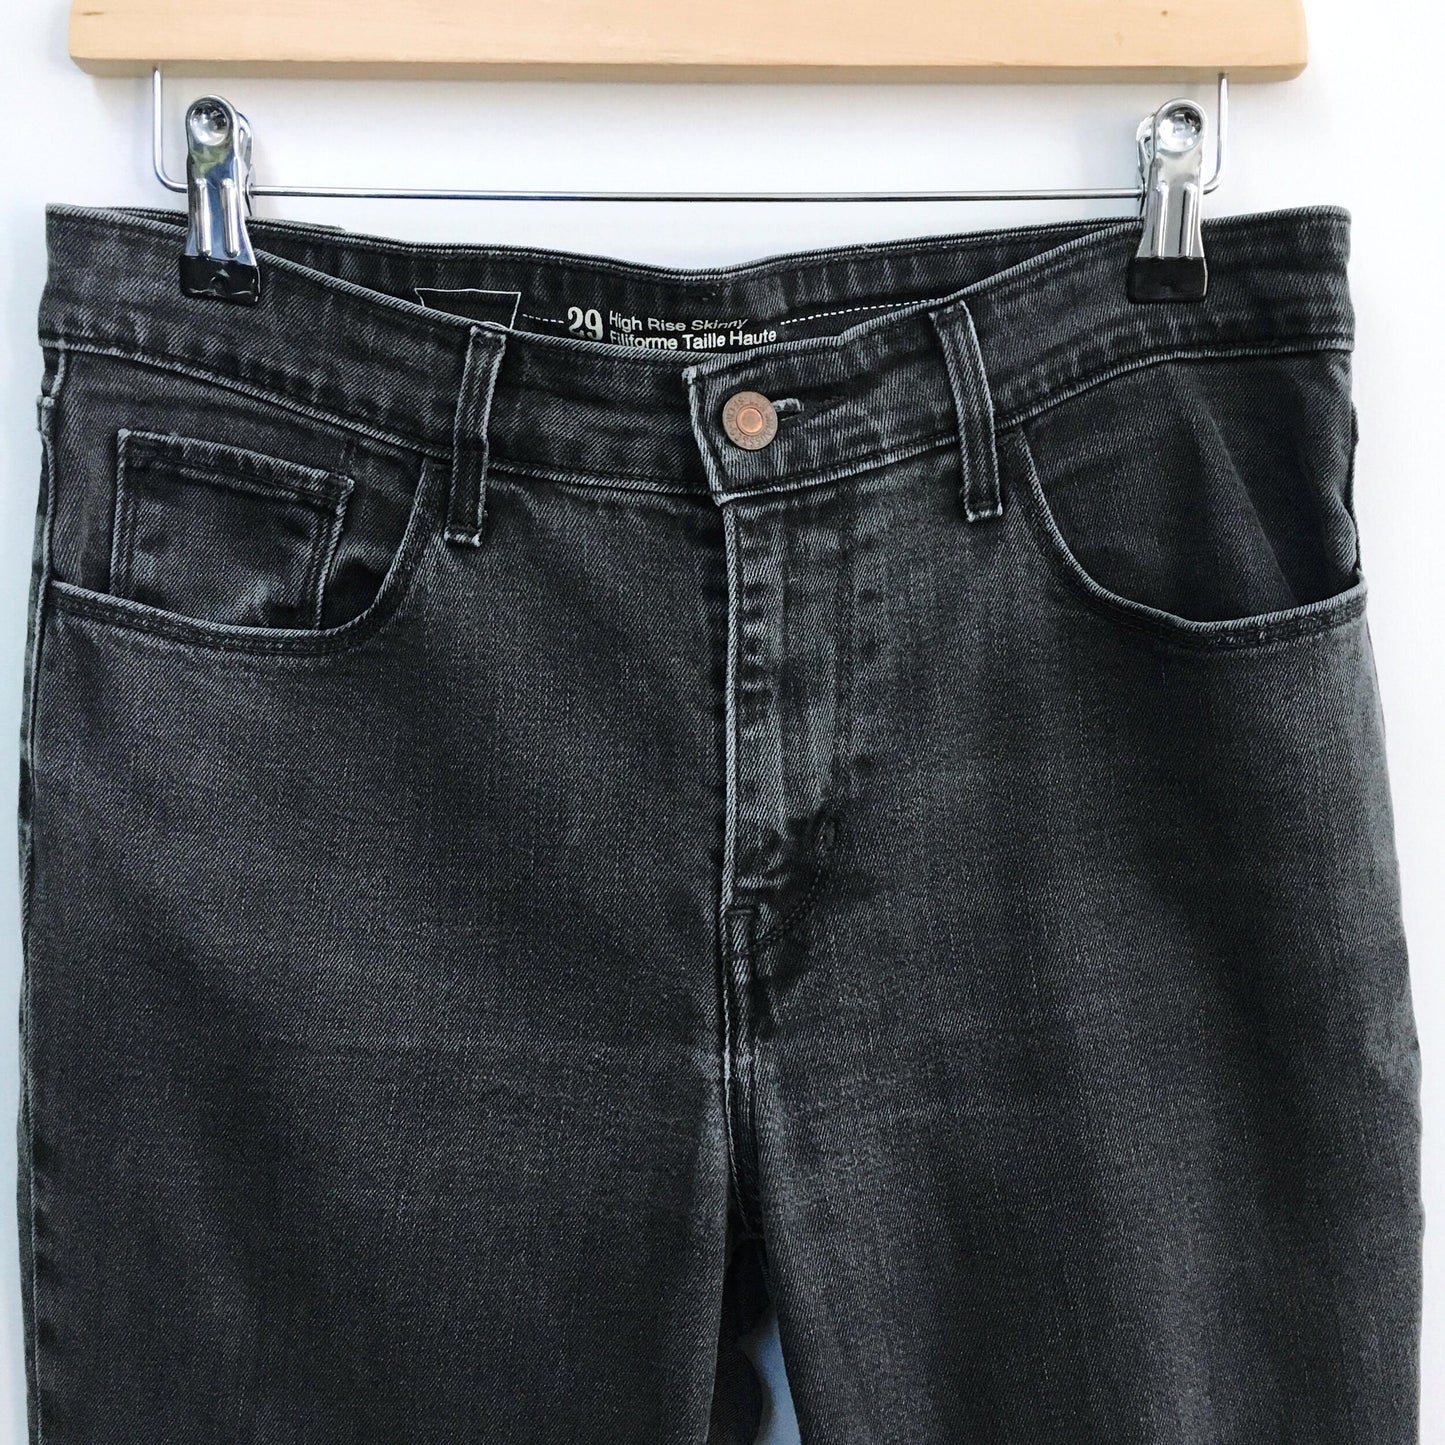 Levi's 721 hi-rise skinny jeans - size 29